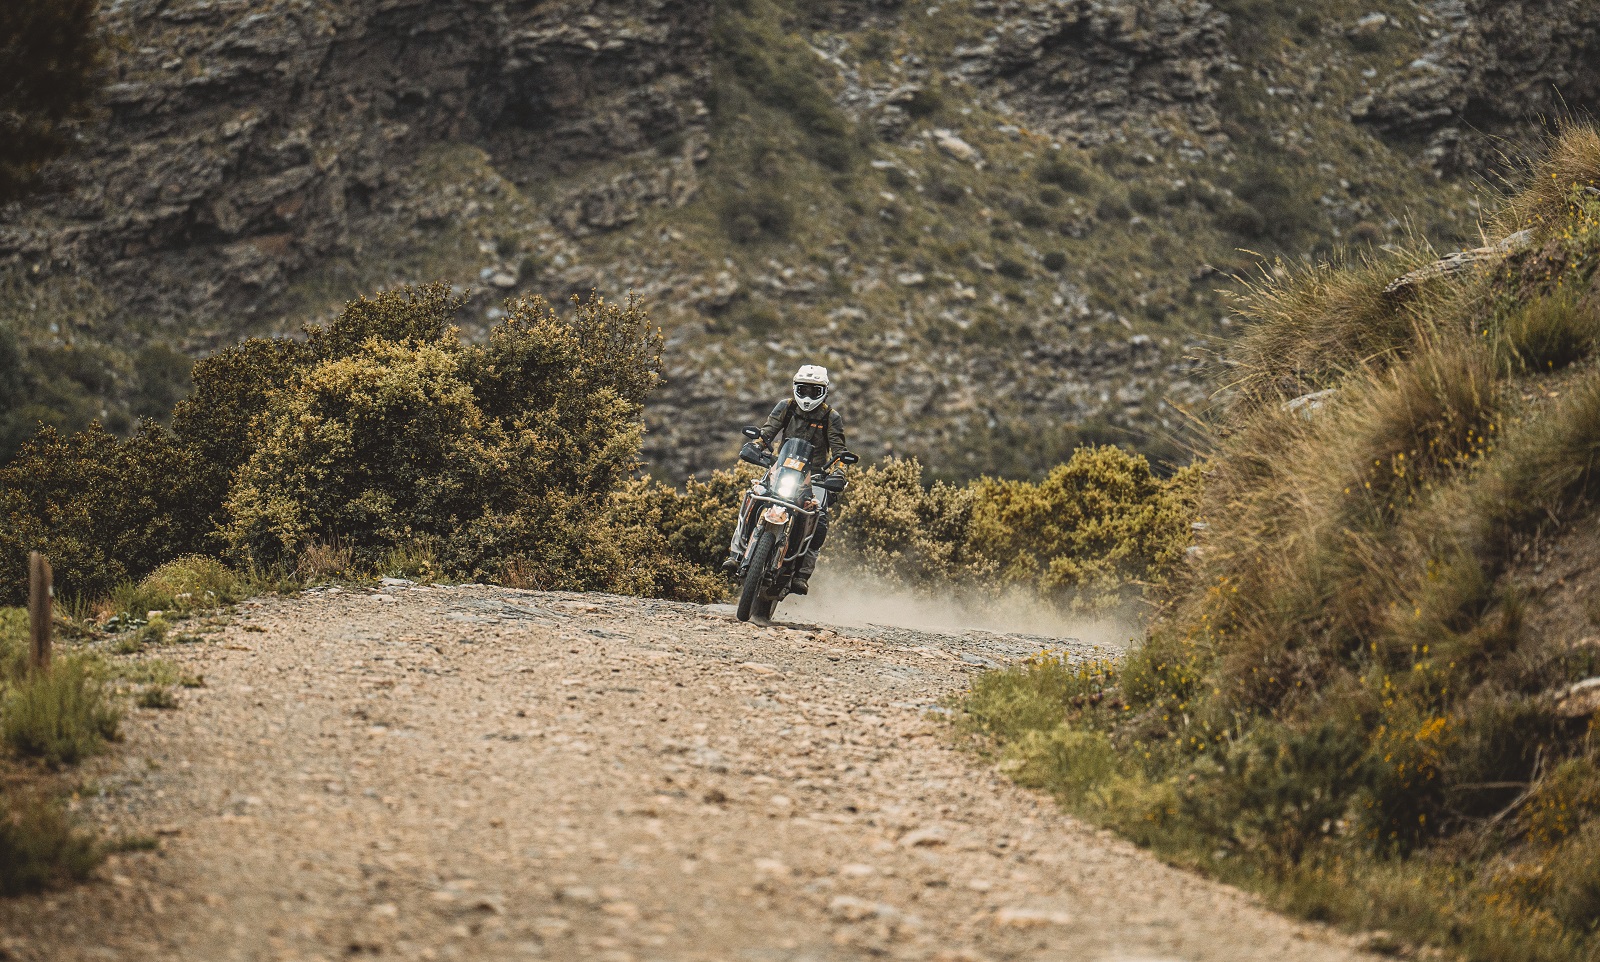 Les Aventures de Michel - Gibraltar race - Ixtem Moto